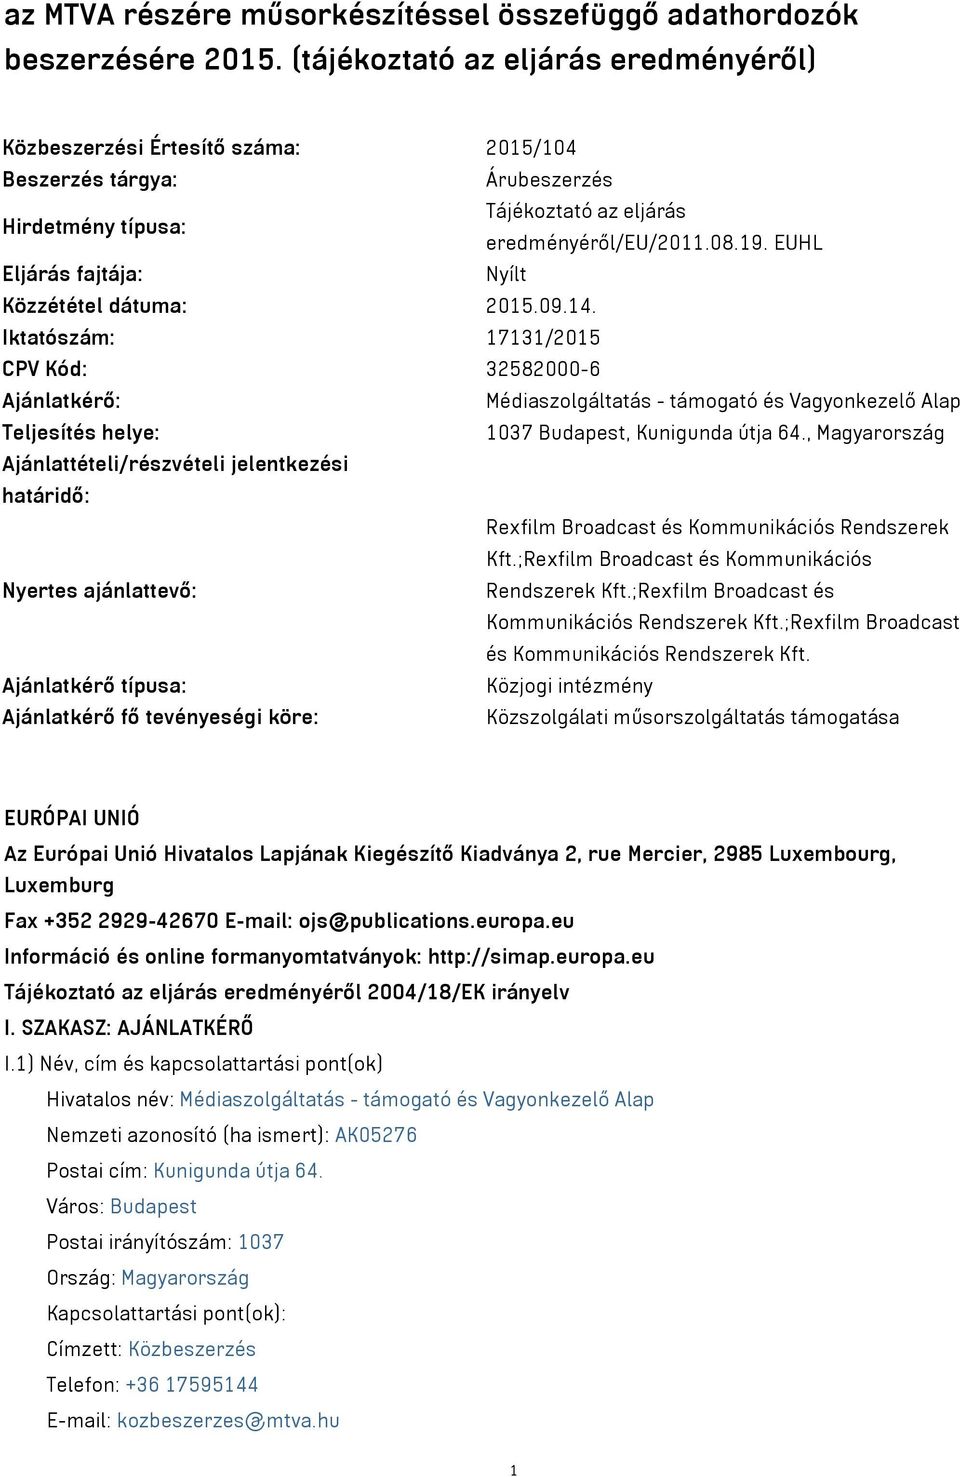 EUHL Eljárás fajtája: Nyílt Közzététel dátuma: 2015.09.14.